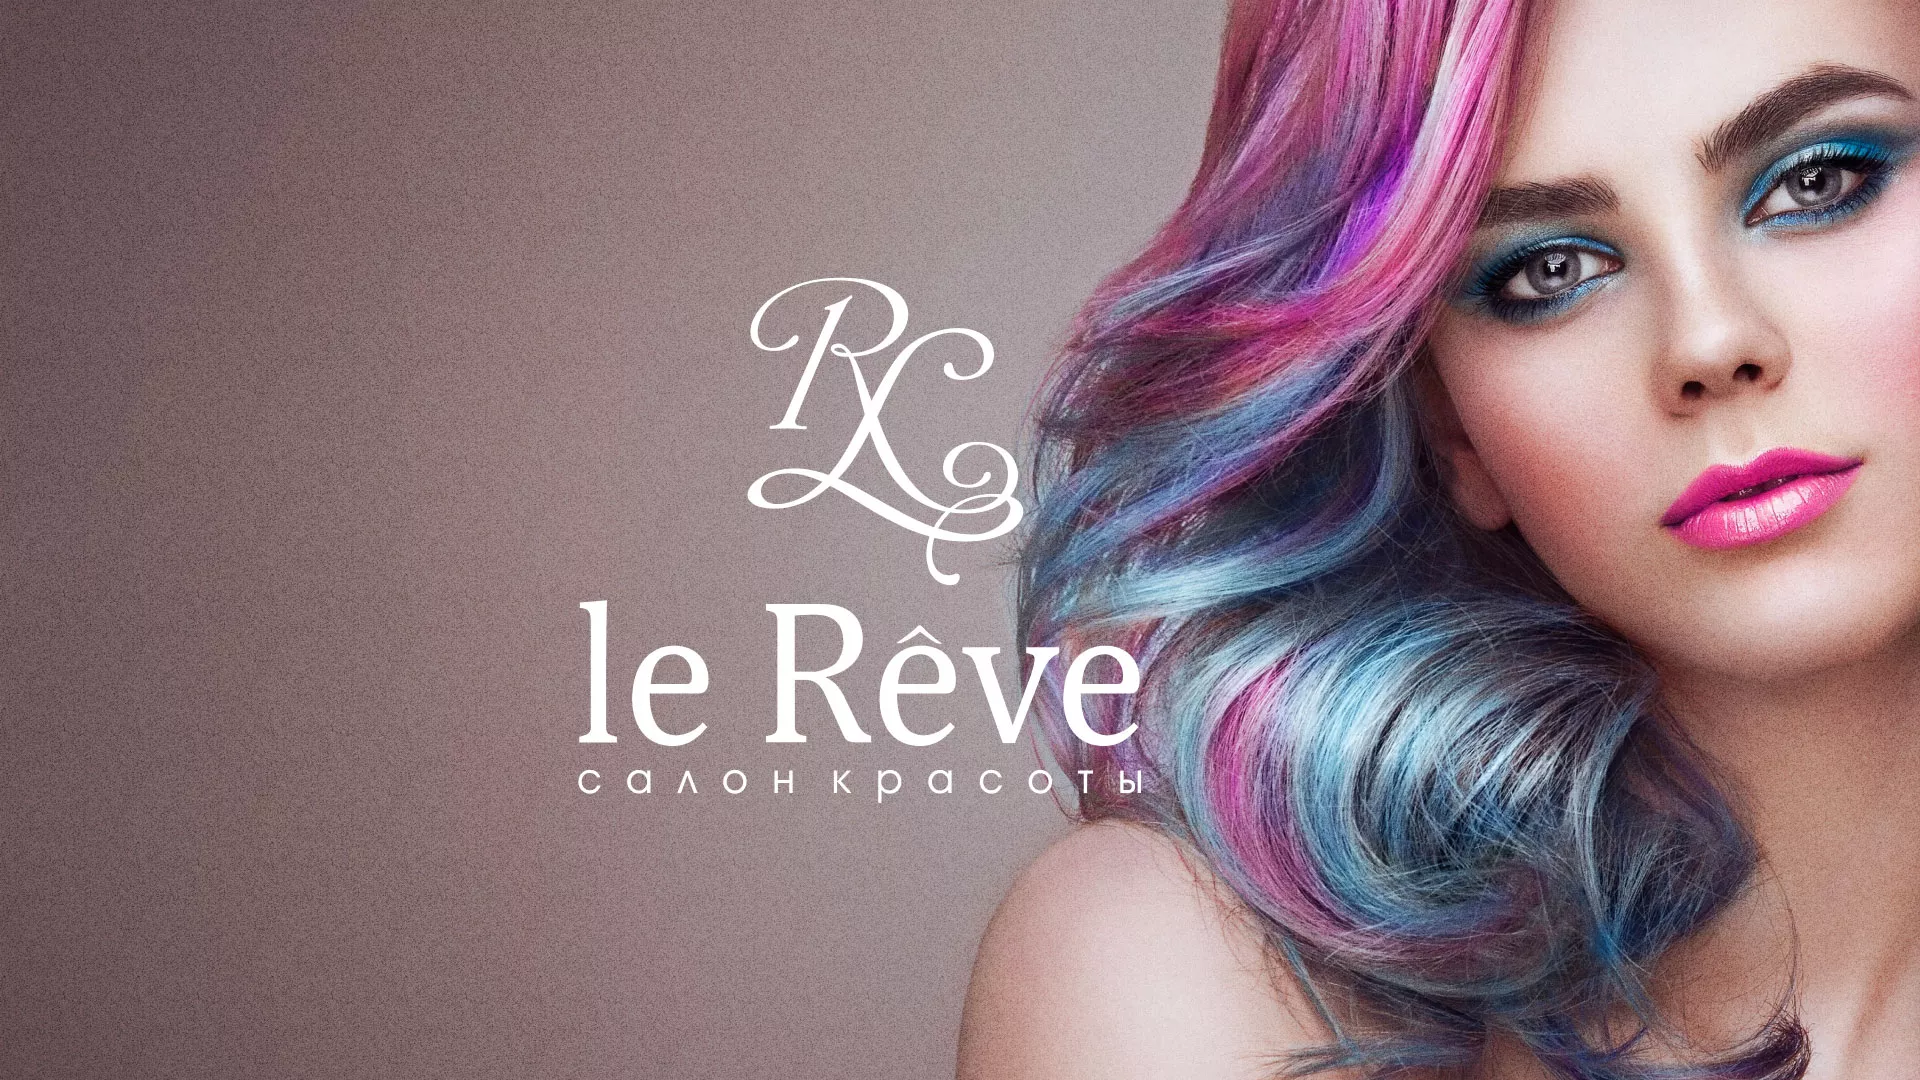 Создание сайта для салона красоты «Le Reve» в Мысках